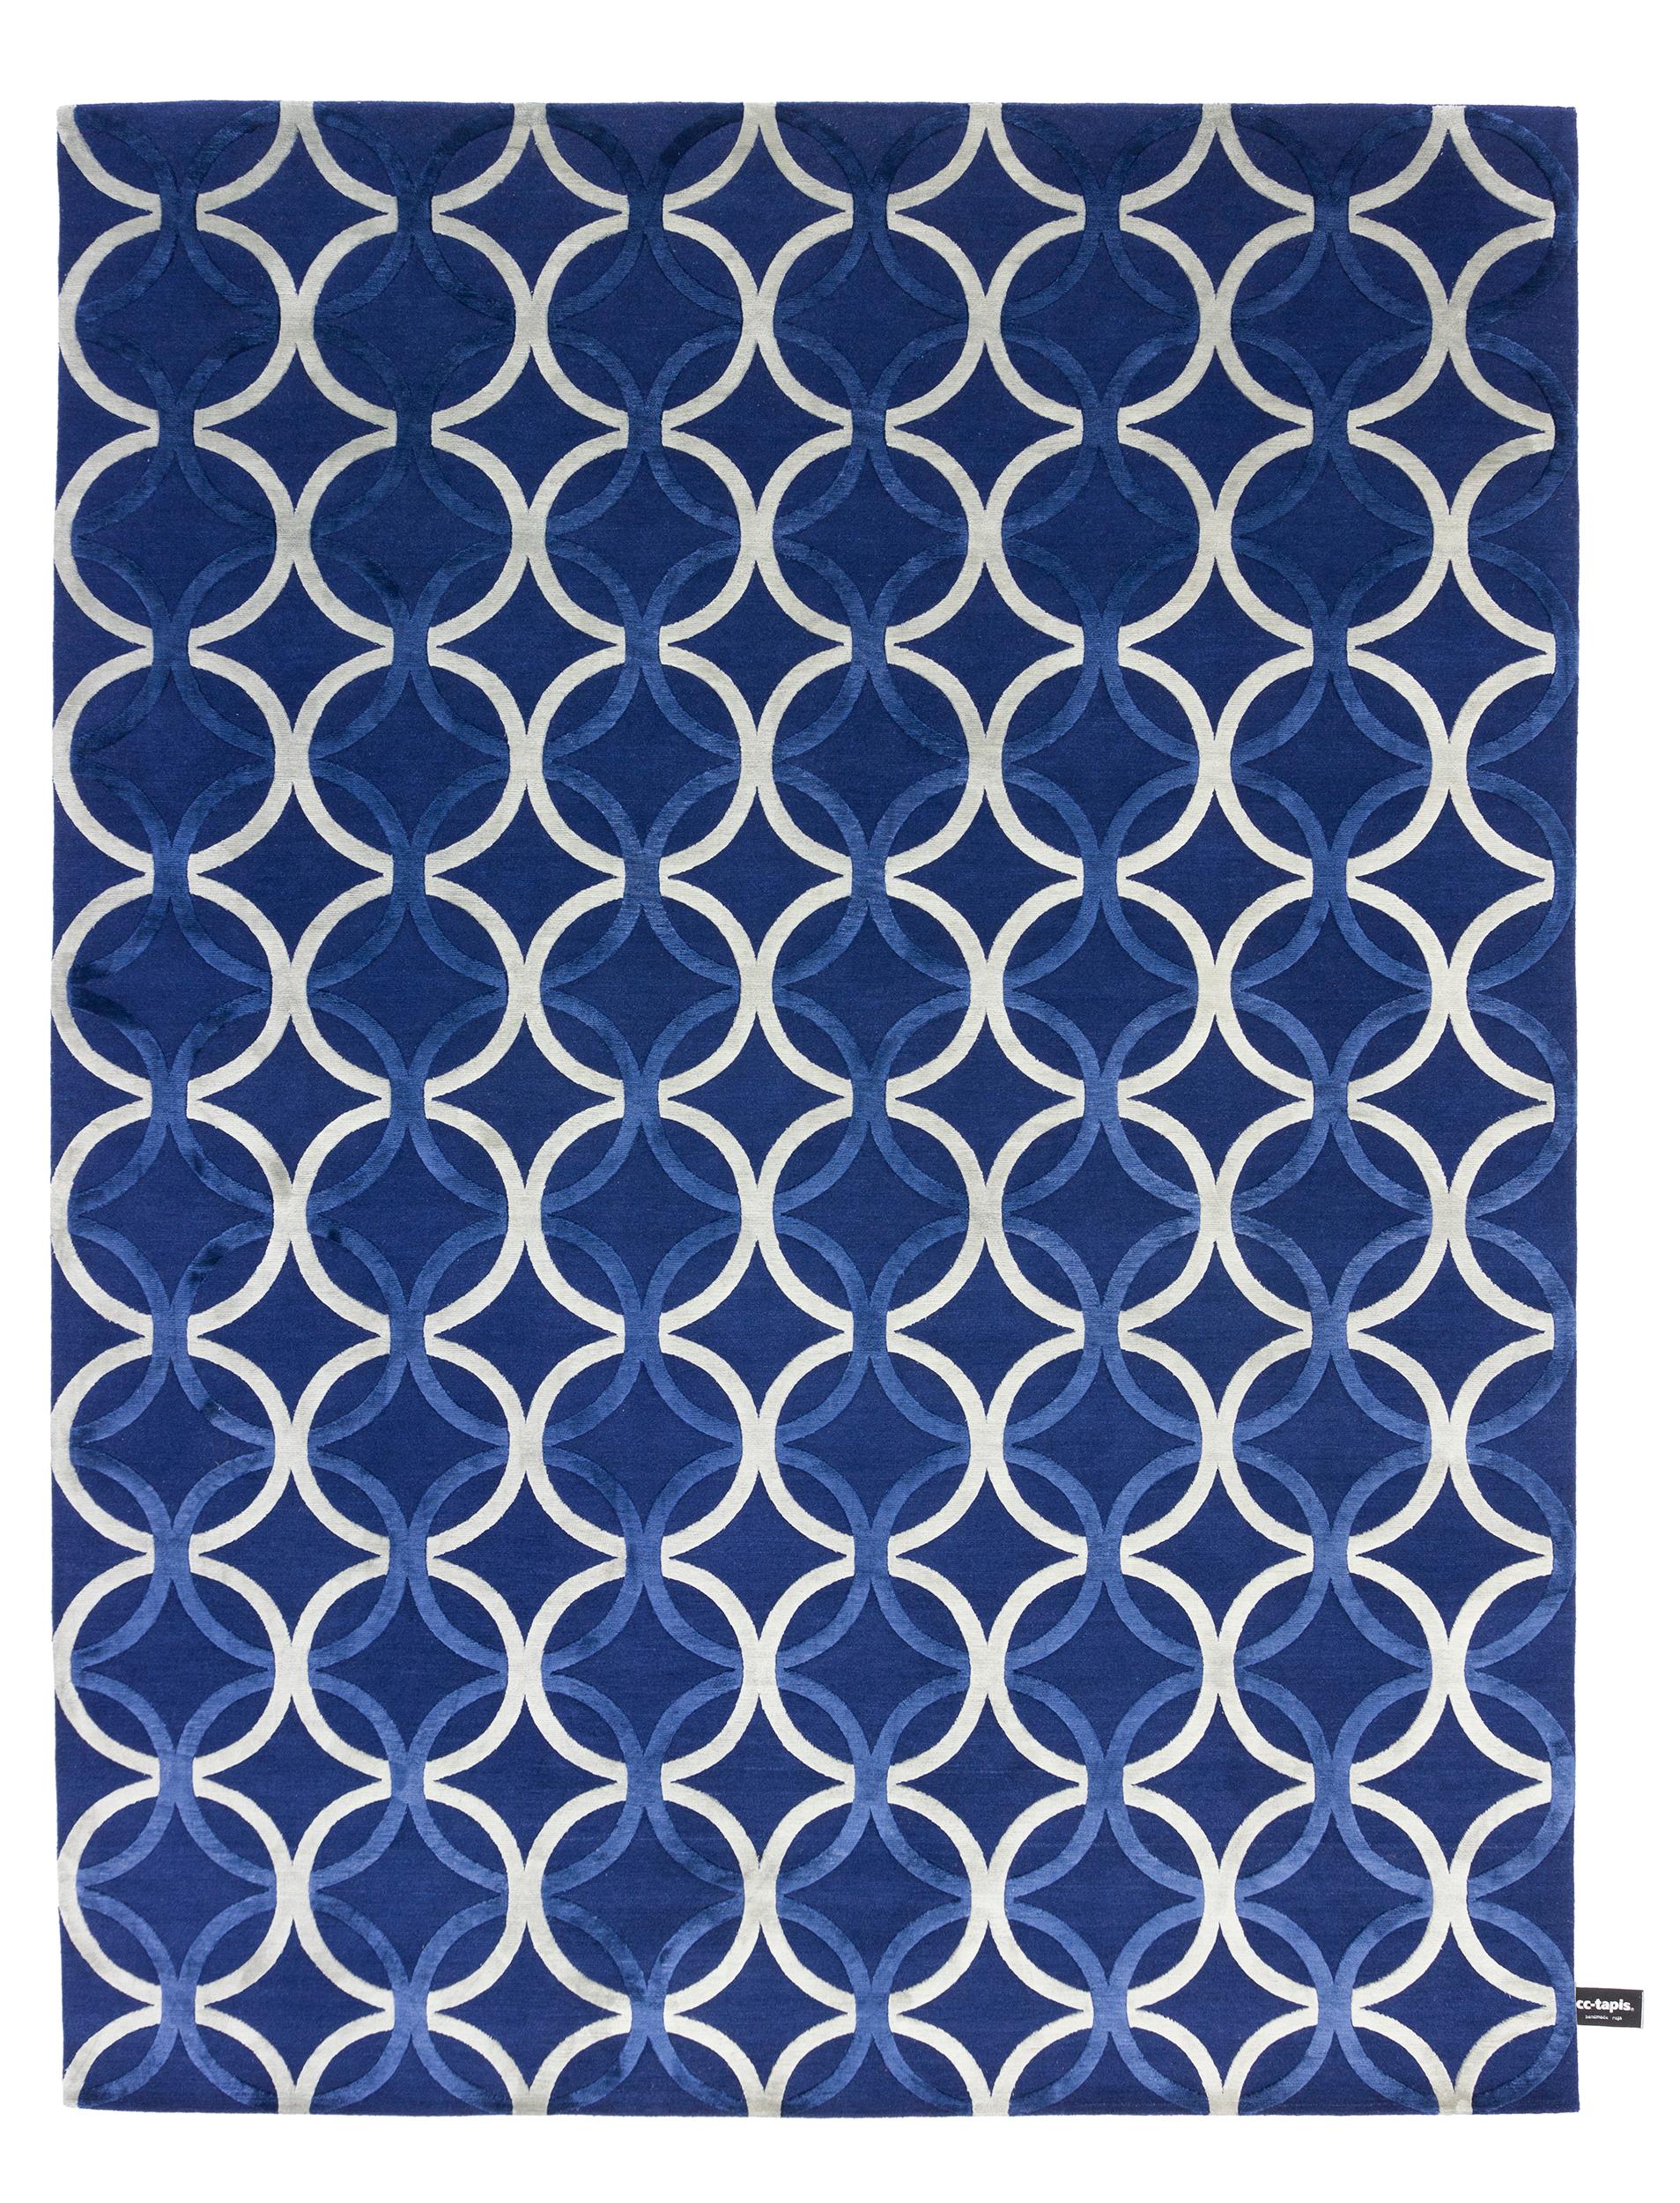 En vente : Blue (Navy) cc-tapis Mesh  Tapis élégant de cc-tapis Design Lab